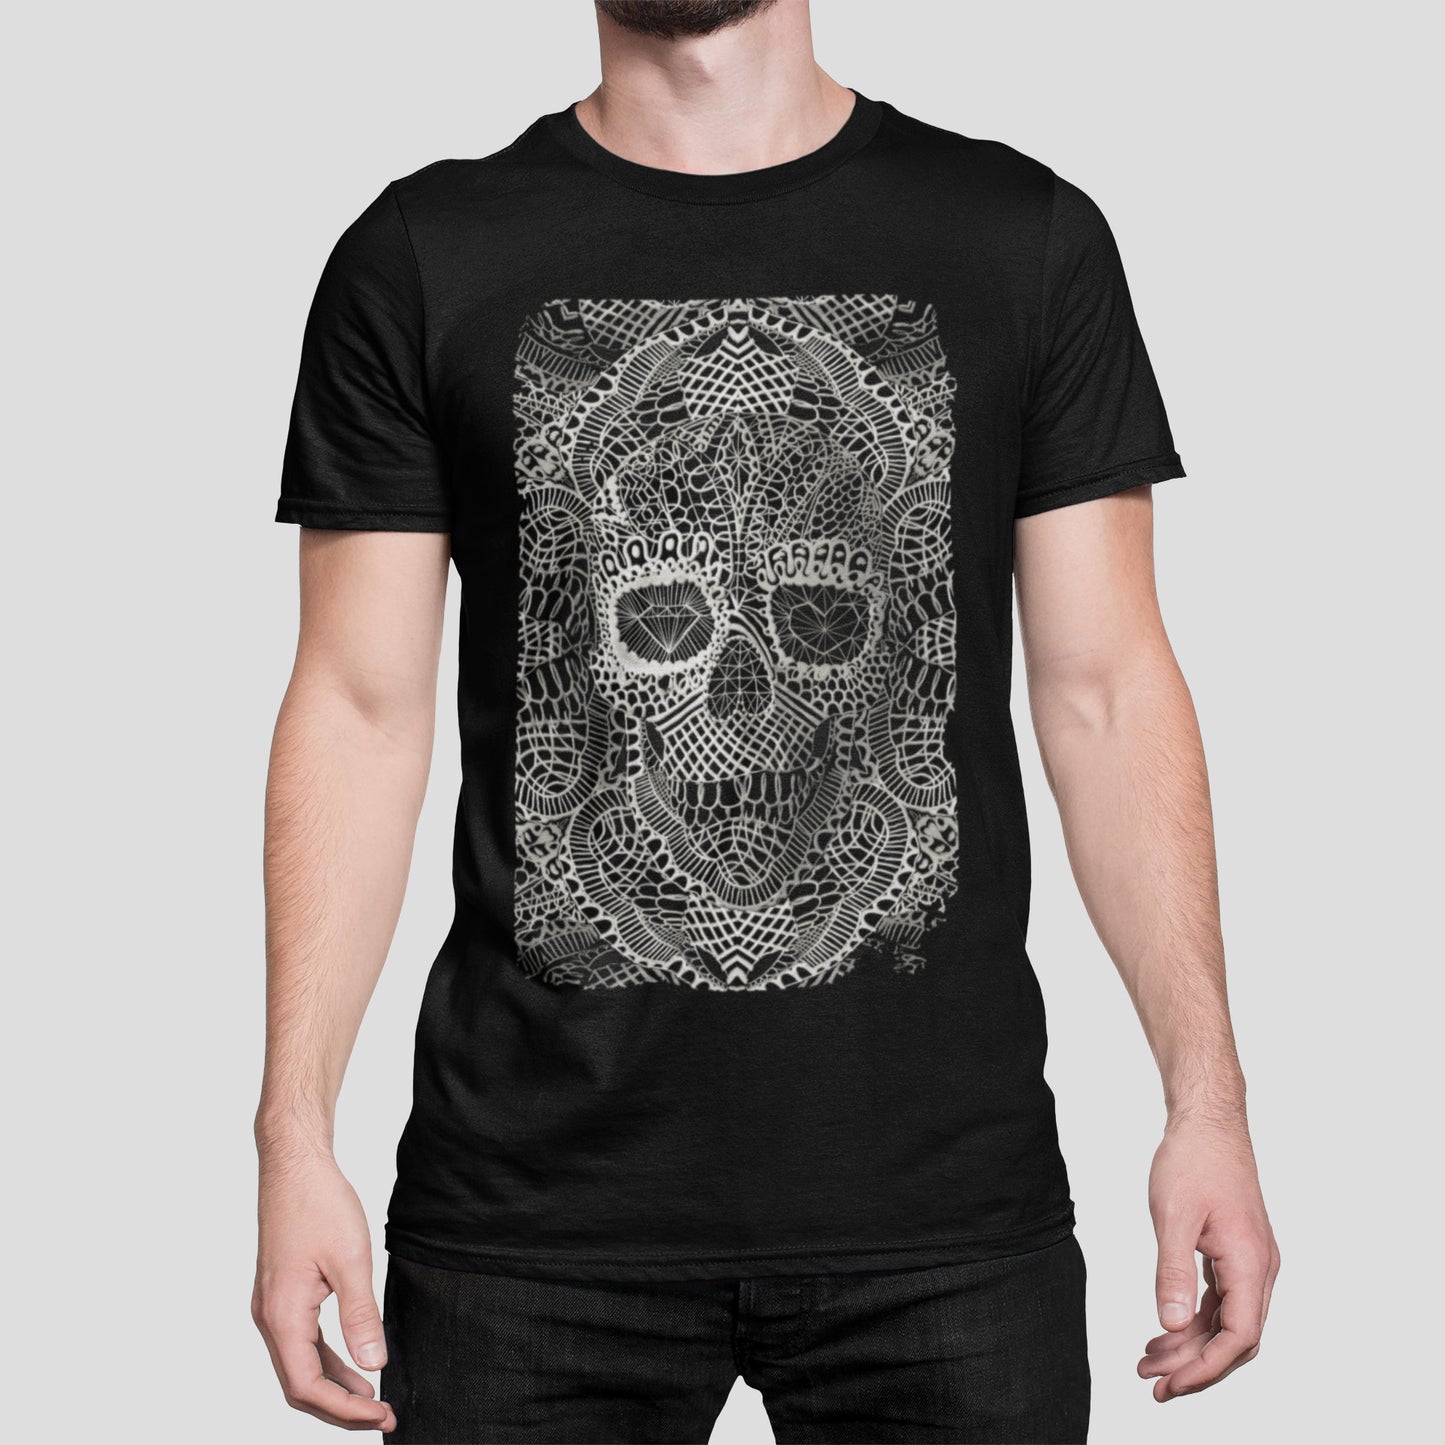 Lace Skull Black And White Illustration Men's T shirt, Skull Art Print Shirt Gift For Him, Bella Canvas Skull Art Gothic Graphic Tee Gift